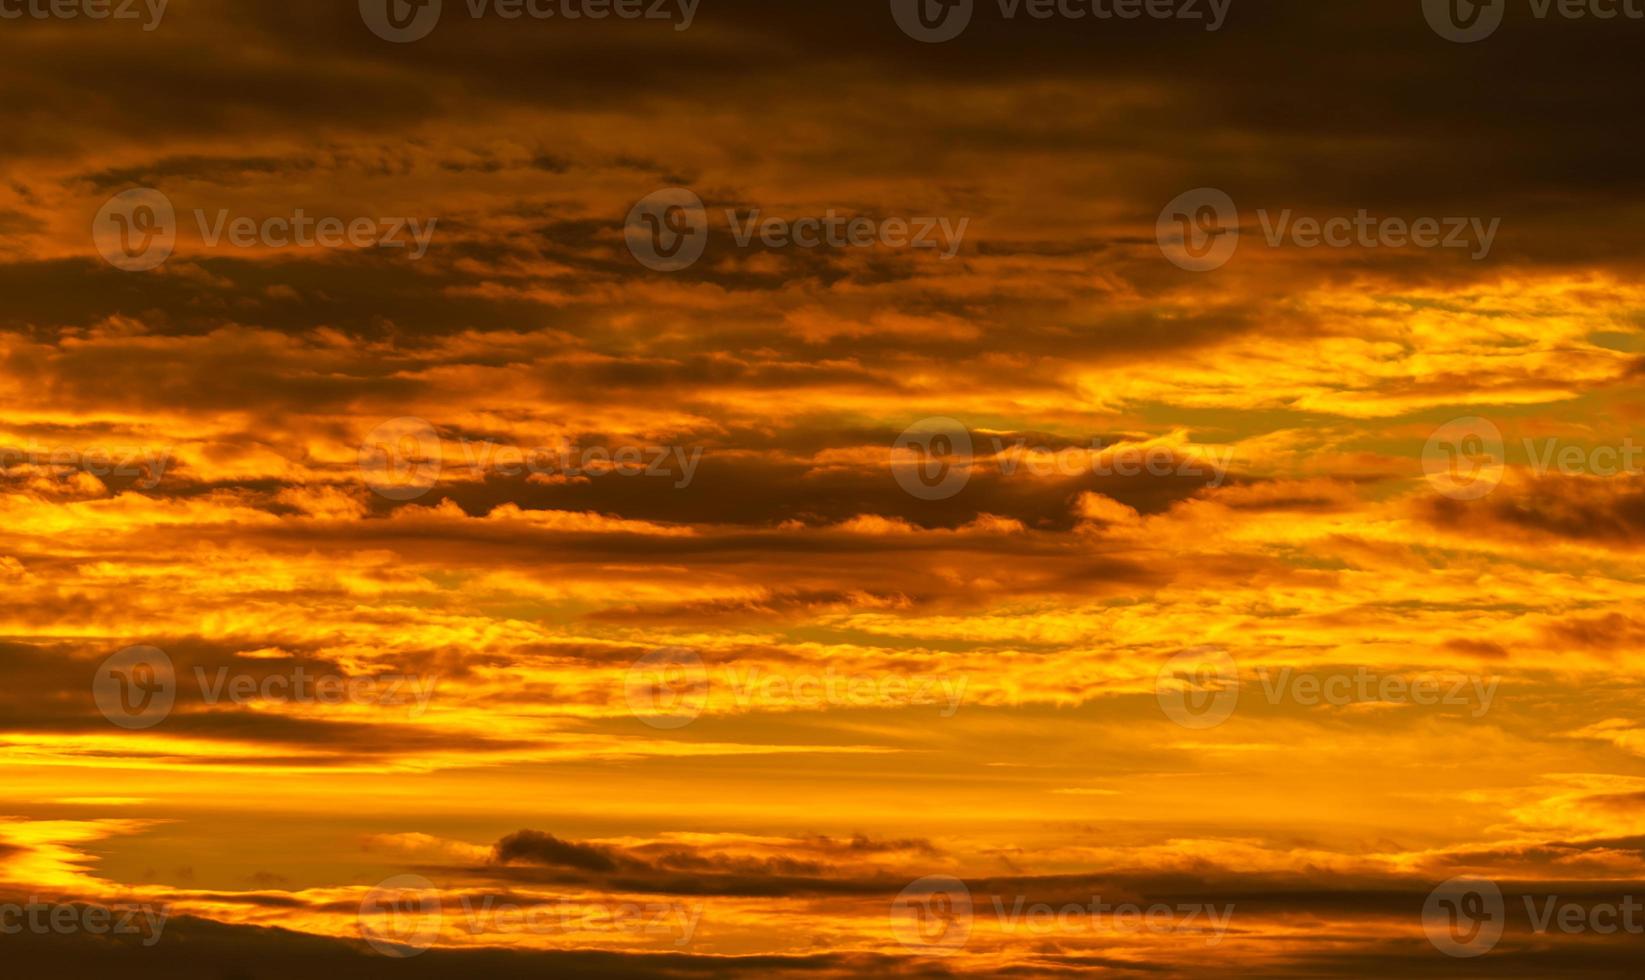 bel cielo al tramonto. cielo al tramonto dorato con un bellissimo motivo di nuvole. nuvole arancioni, gialle e scure la sera. libertà e sfondo calmo. bellezza nella natura. scena potente e spirituale. foto